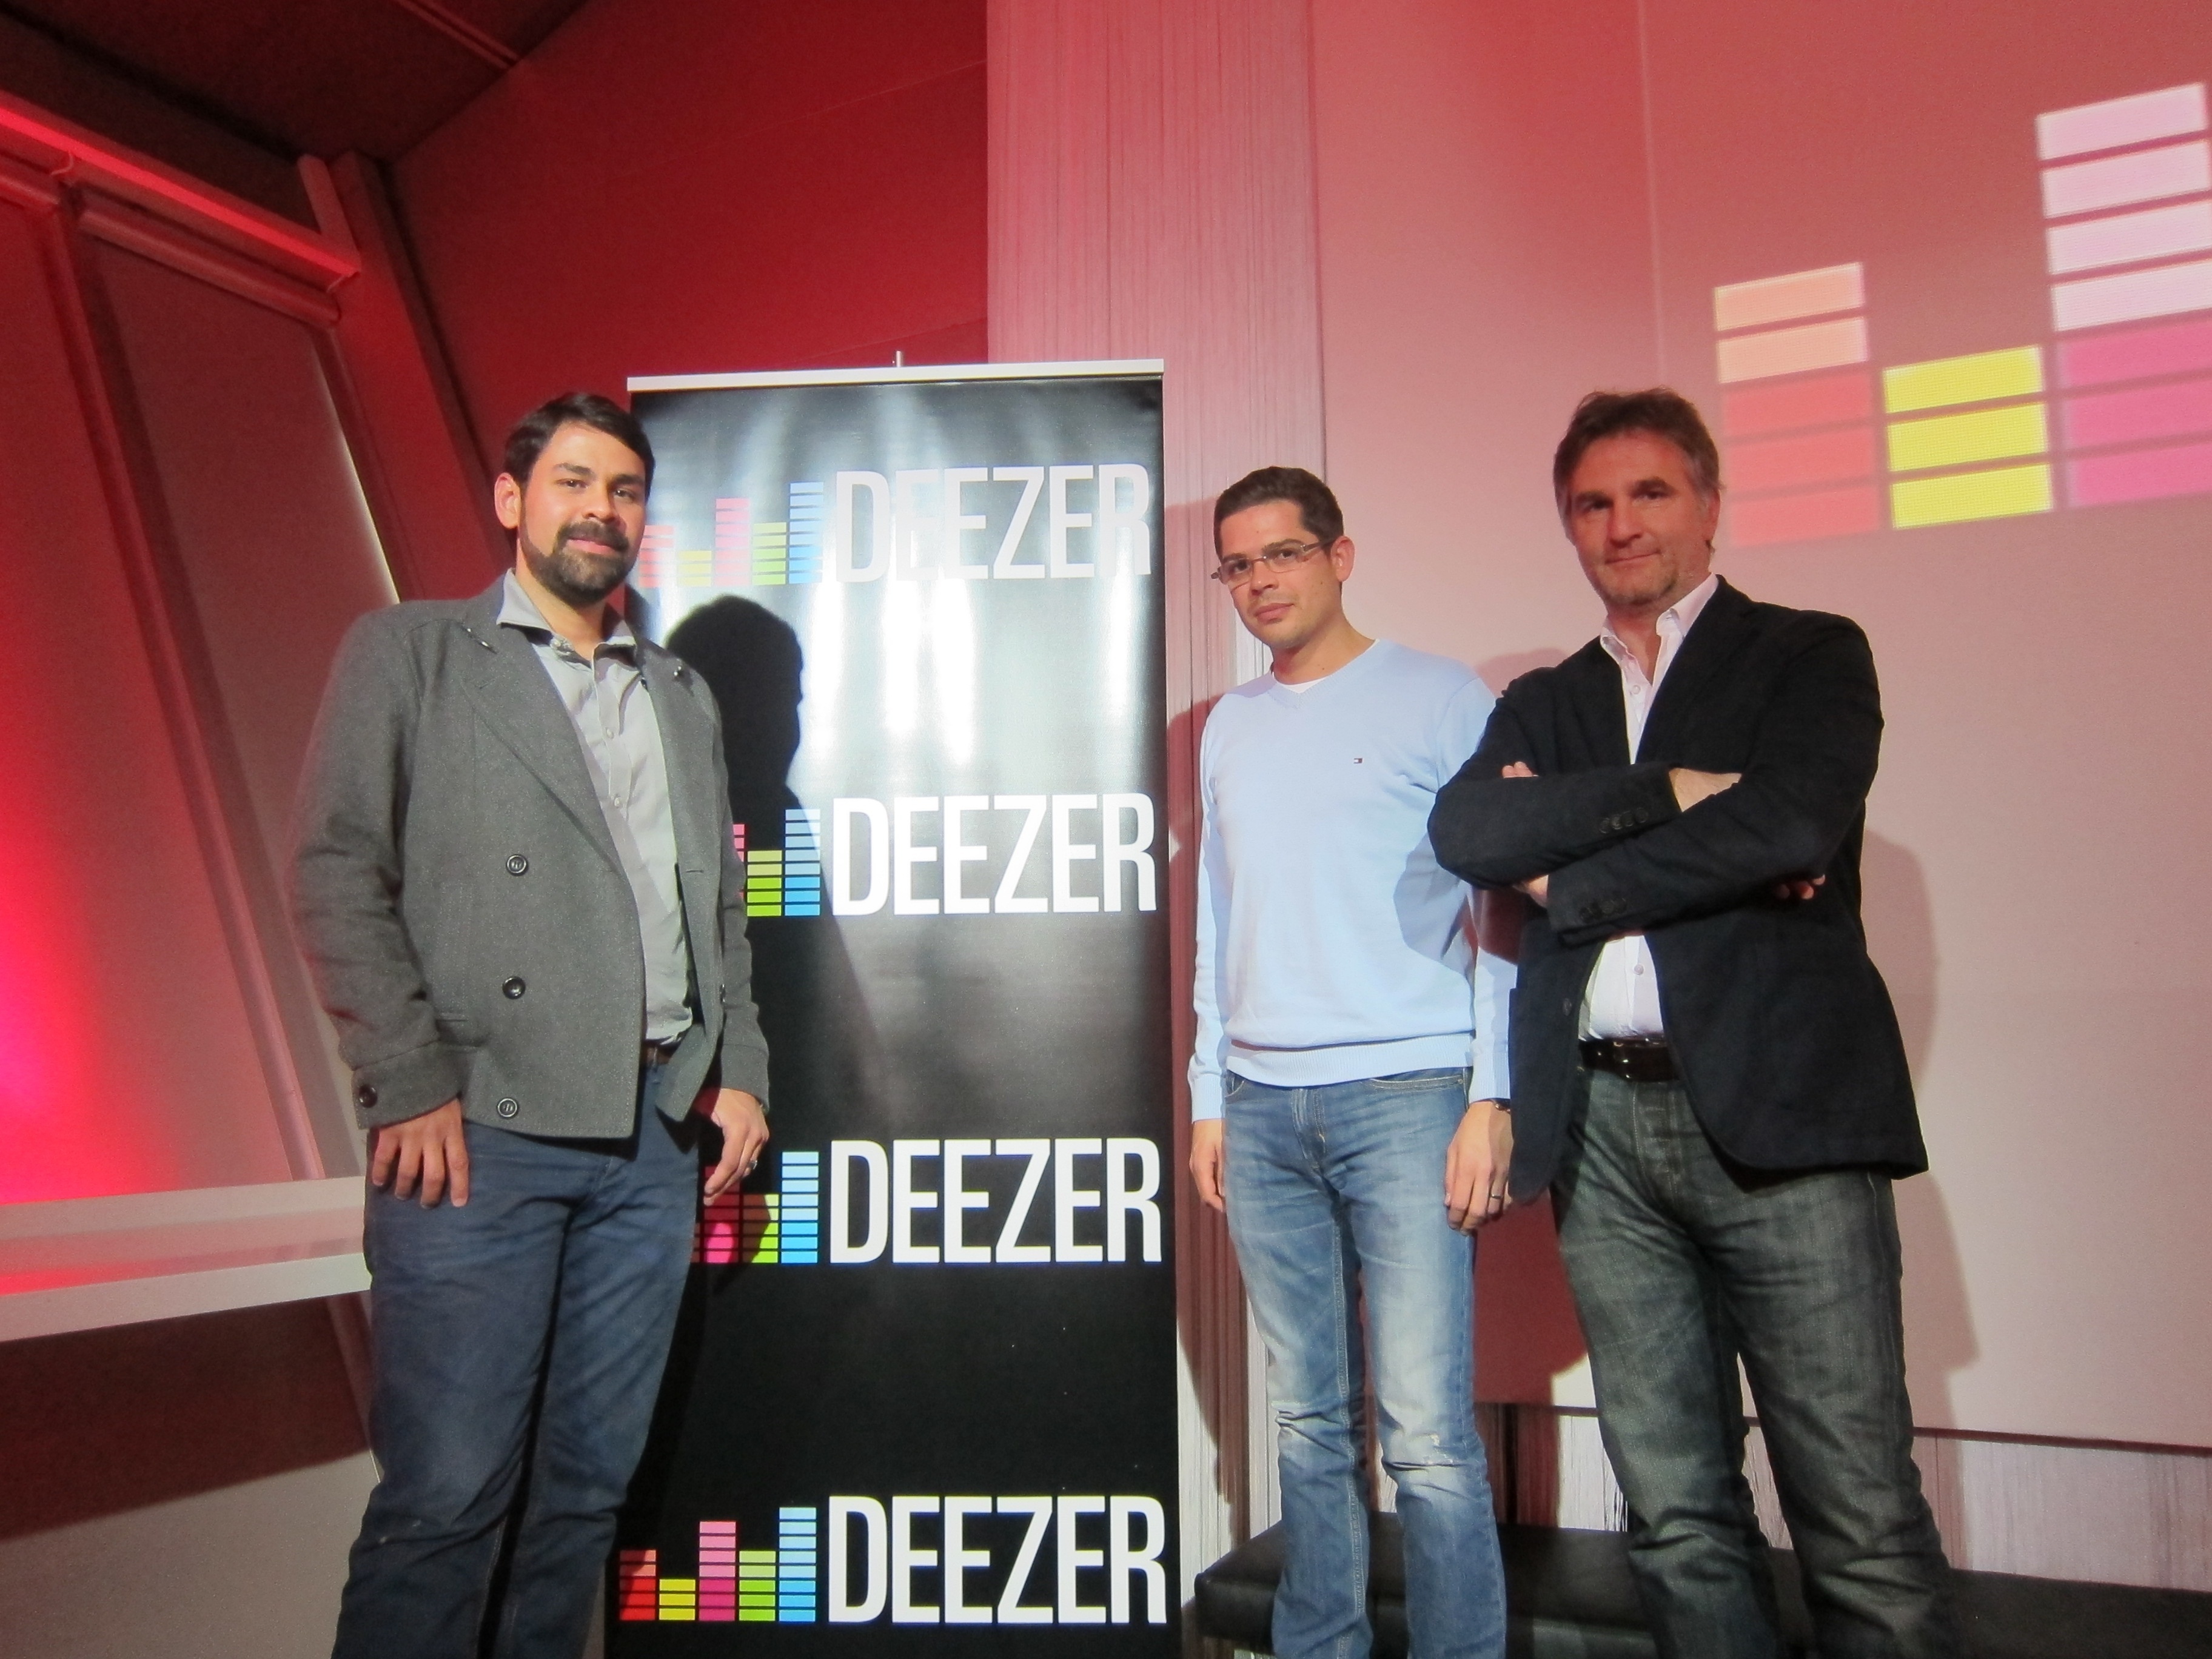 La plataforma musical »Deezer» desembarca en España con una oferta de un año gratis de servicio con publicidad